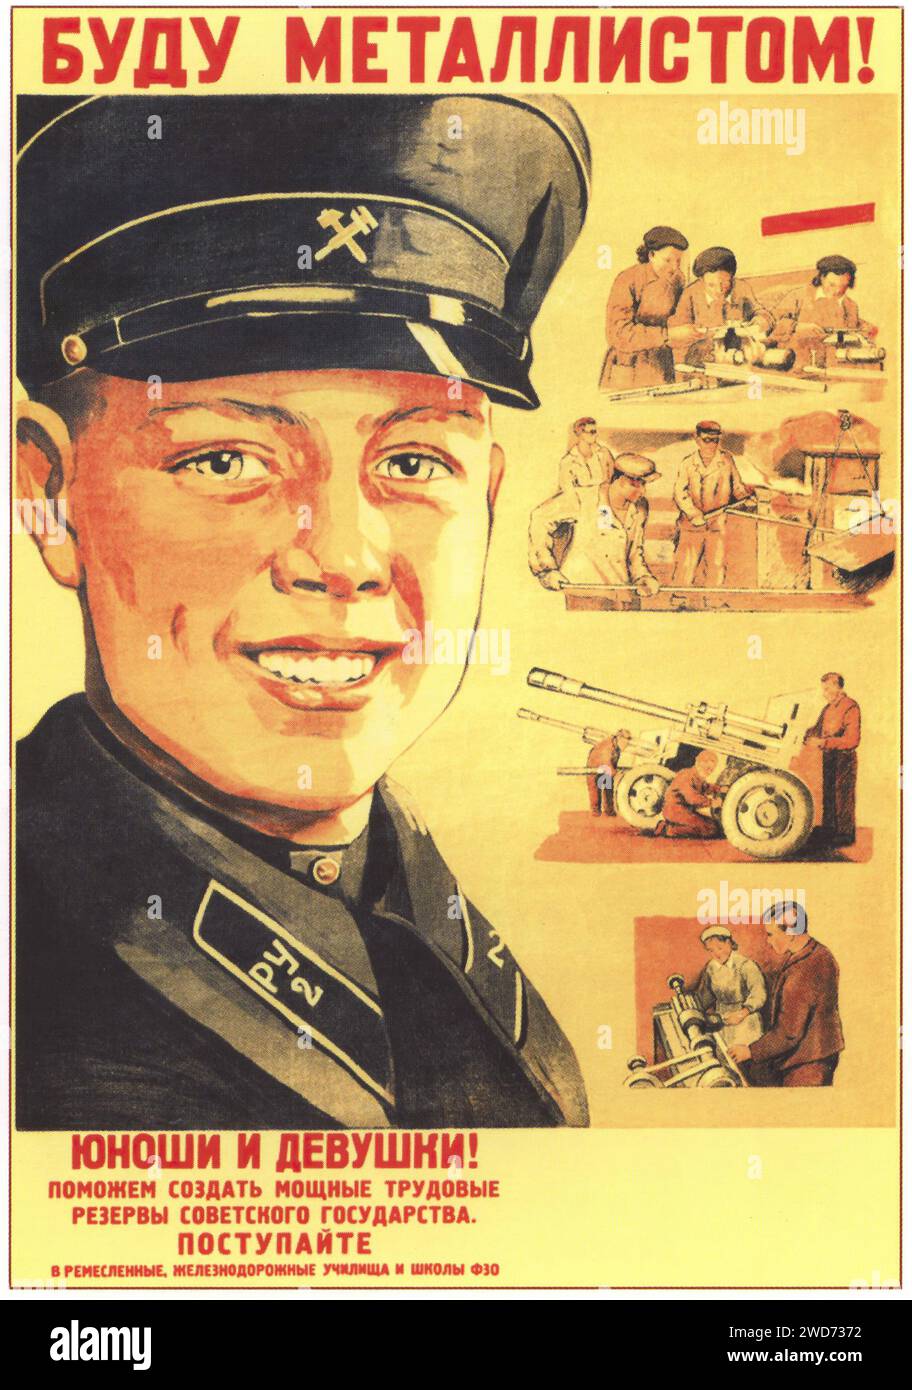 N. Vatolina. Sarò un Metal Worker. 1948 - Vintage Soviet pubblicità e propaganda - | 'GIOVANI UOMINI E DONNE! AIUTIAMO A CREARE FORTI RISERVE DI LAVORO DELLO STATO SOVIETICO. ISCRIVITI Descrizione: L'immagine è un manifesto motivazionale sovietico che chiama giovani uomini e donne a diventare metallurgisti, una professione stimata nella spinta industriale sovietica. Il volto di un giovane sorridente con un berretto metallurgista domina la metà superiore del poster. Sotto, varie scene raffigurano uomini e donne che lavorano nella metallurgia e nell'ingegneria, contribuendo alla forza lavoro sovietica. Lo stile è ottimistico e lungimirante Foto Stock